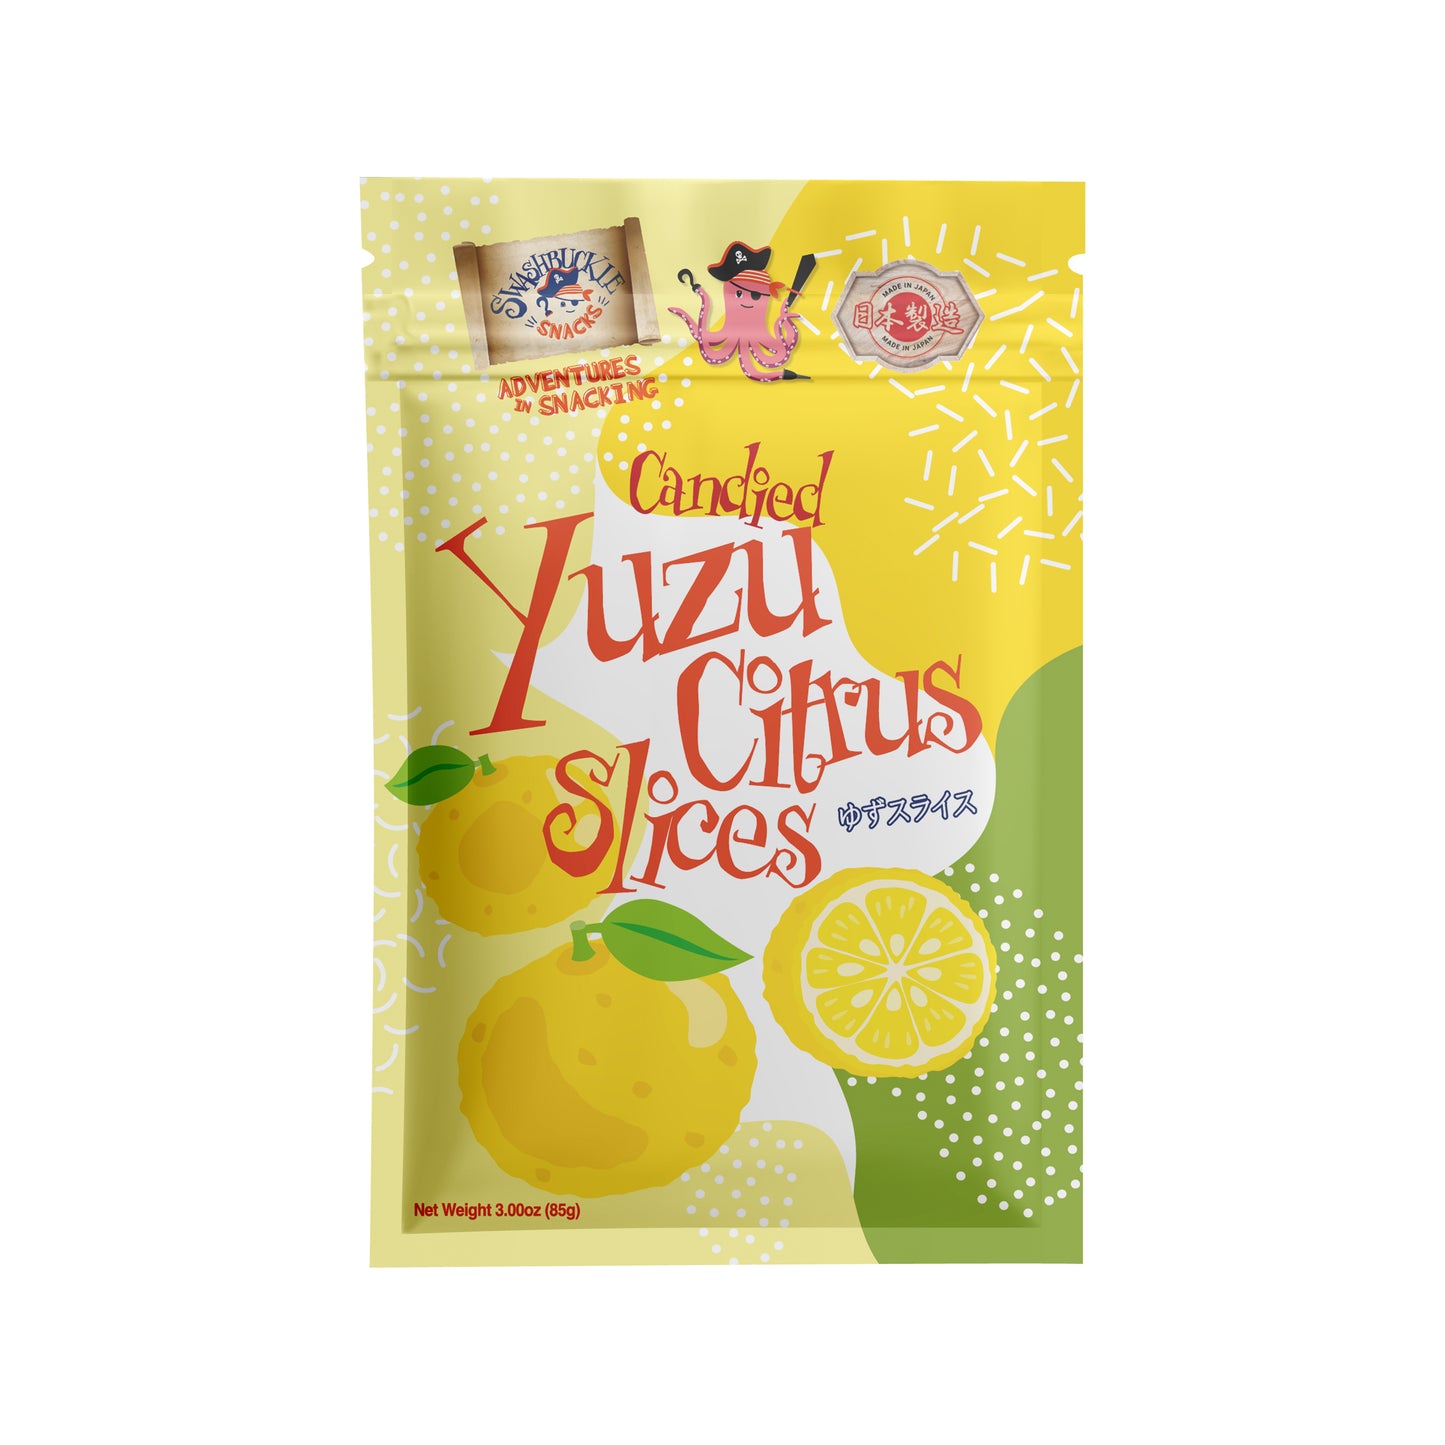 Candied Yuzu Citrus Slices 3.00oz (85g)